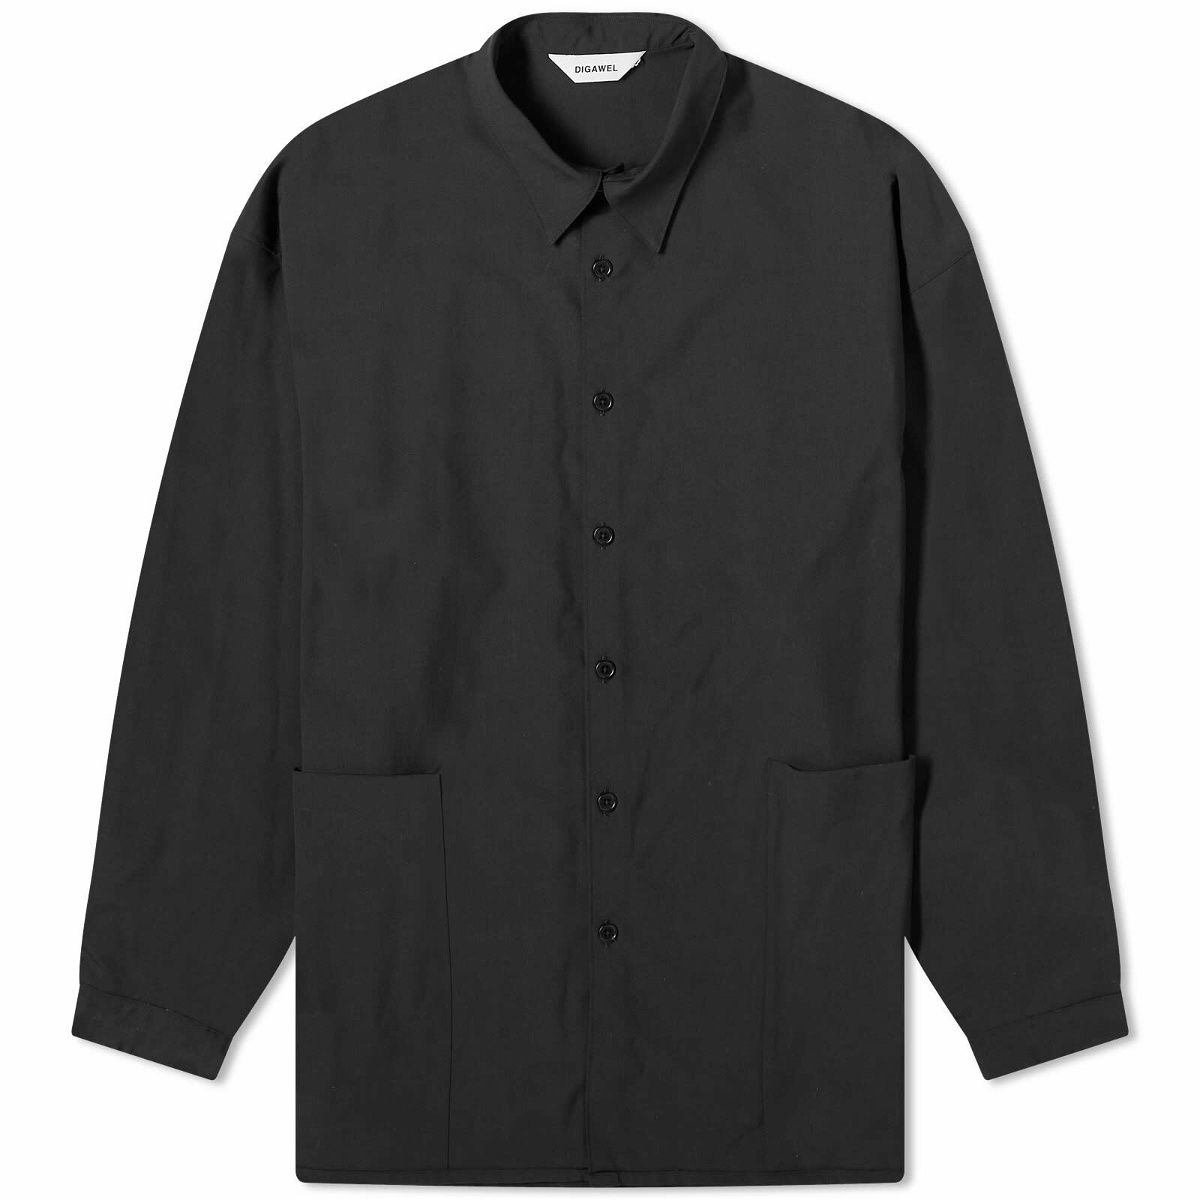 Photo: DIGAWEL Men's Side Pocket Shirt in Black